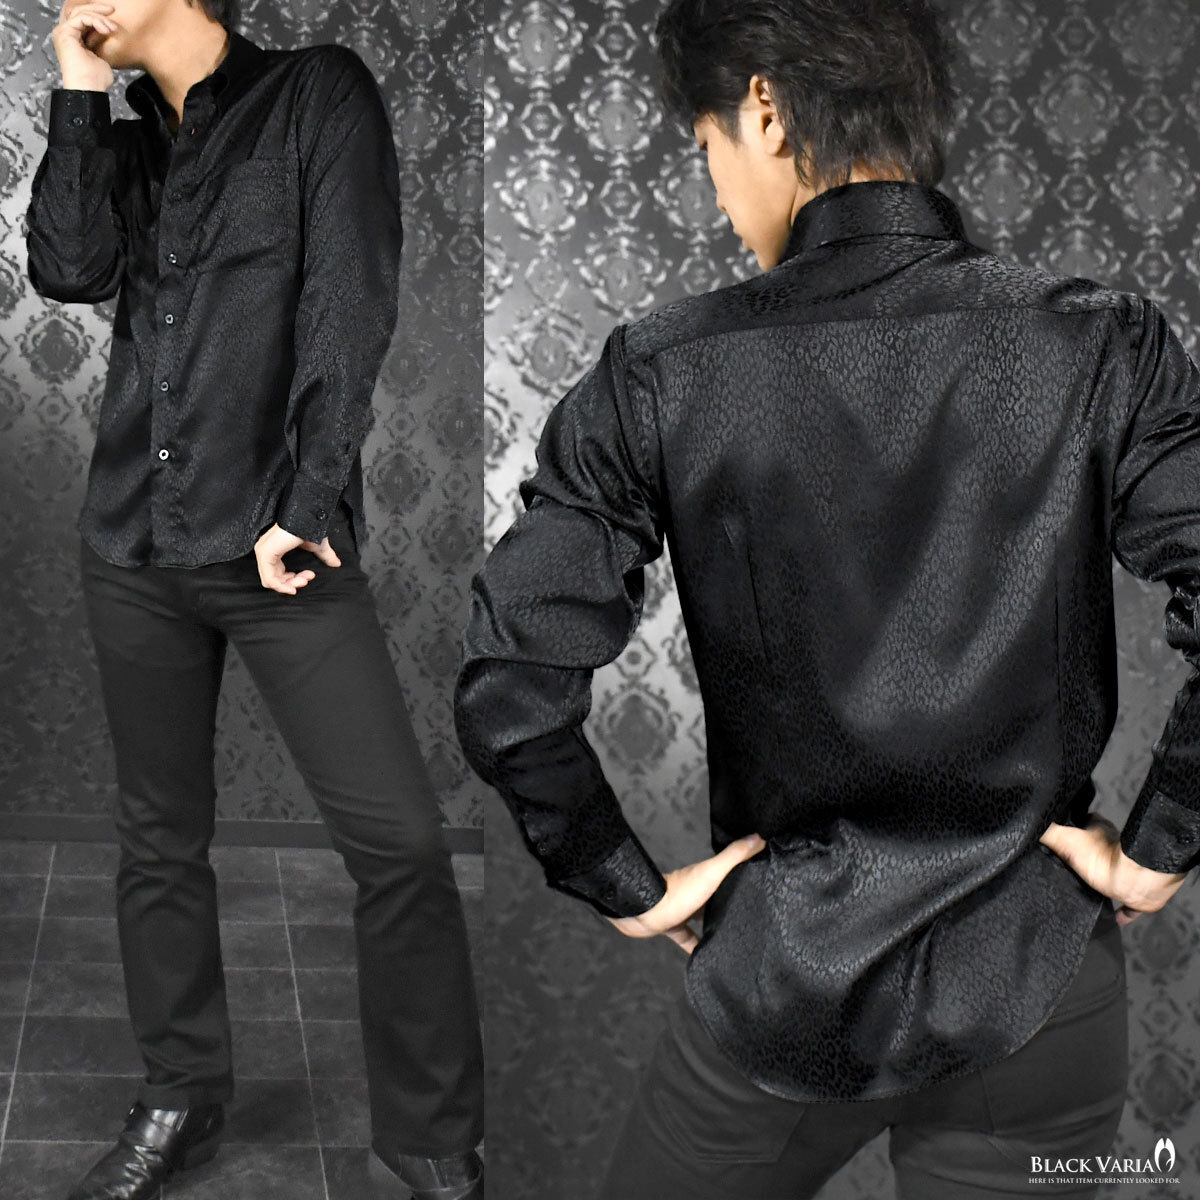 181710-bk BLACK VARIA ドゥエボットーニ ヒョウ柄 豹 ジャガード スナップダウン ドレスシャツ 日本製 メンズ(ブラック黒) 3L パーティー_画像3